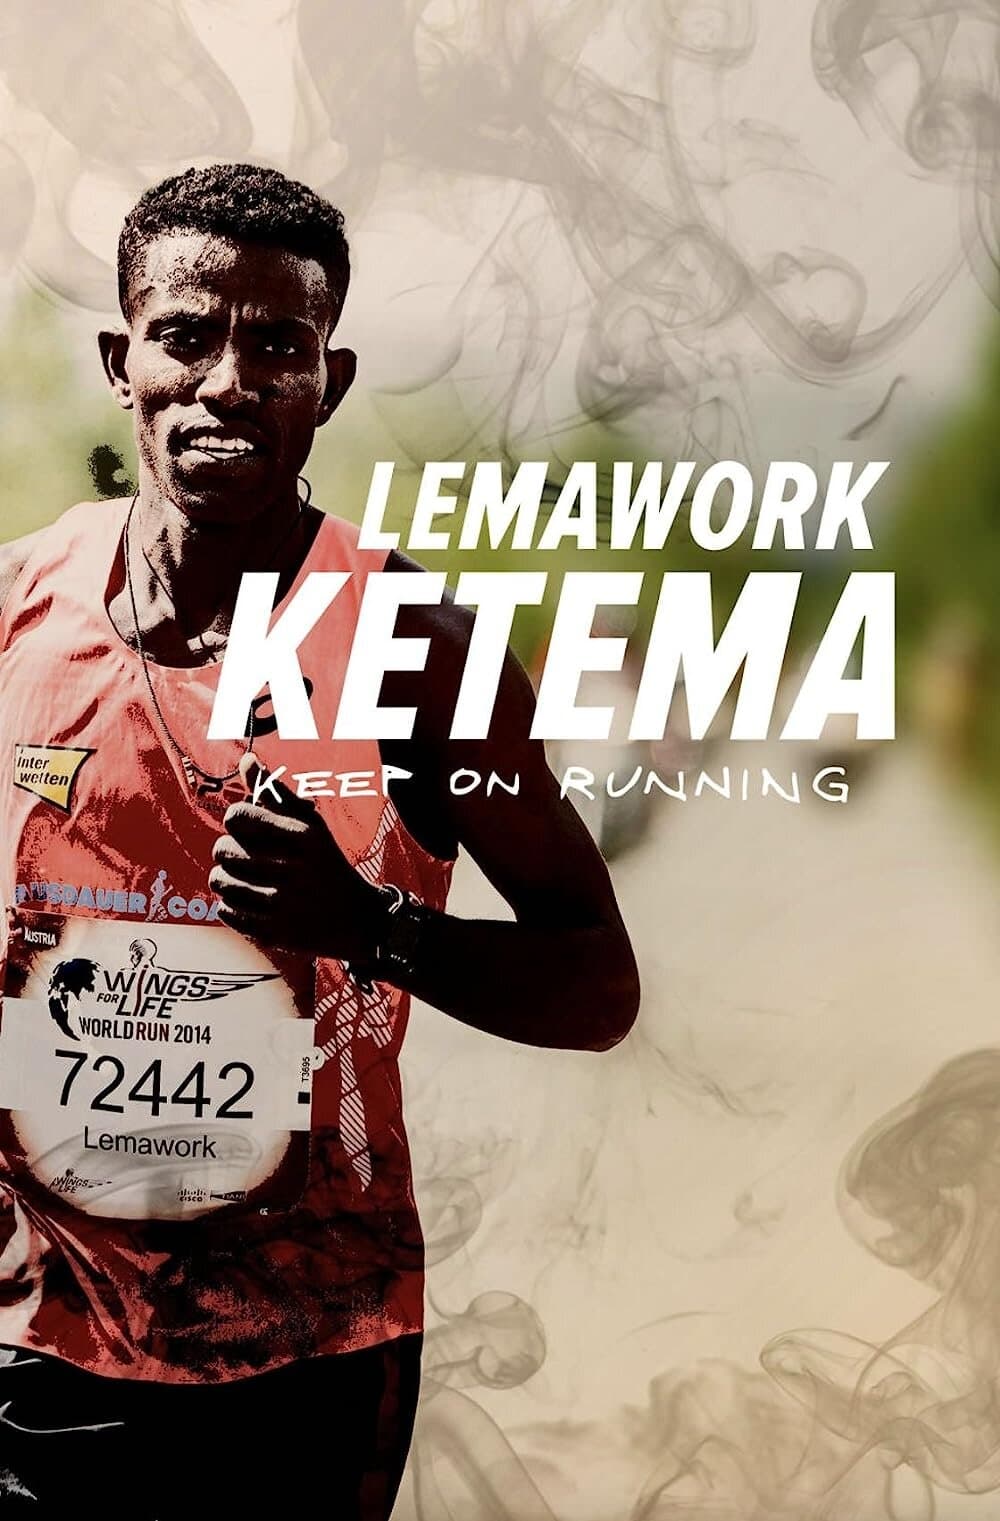 Lemawork Ketema: Keep on Running